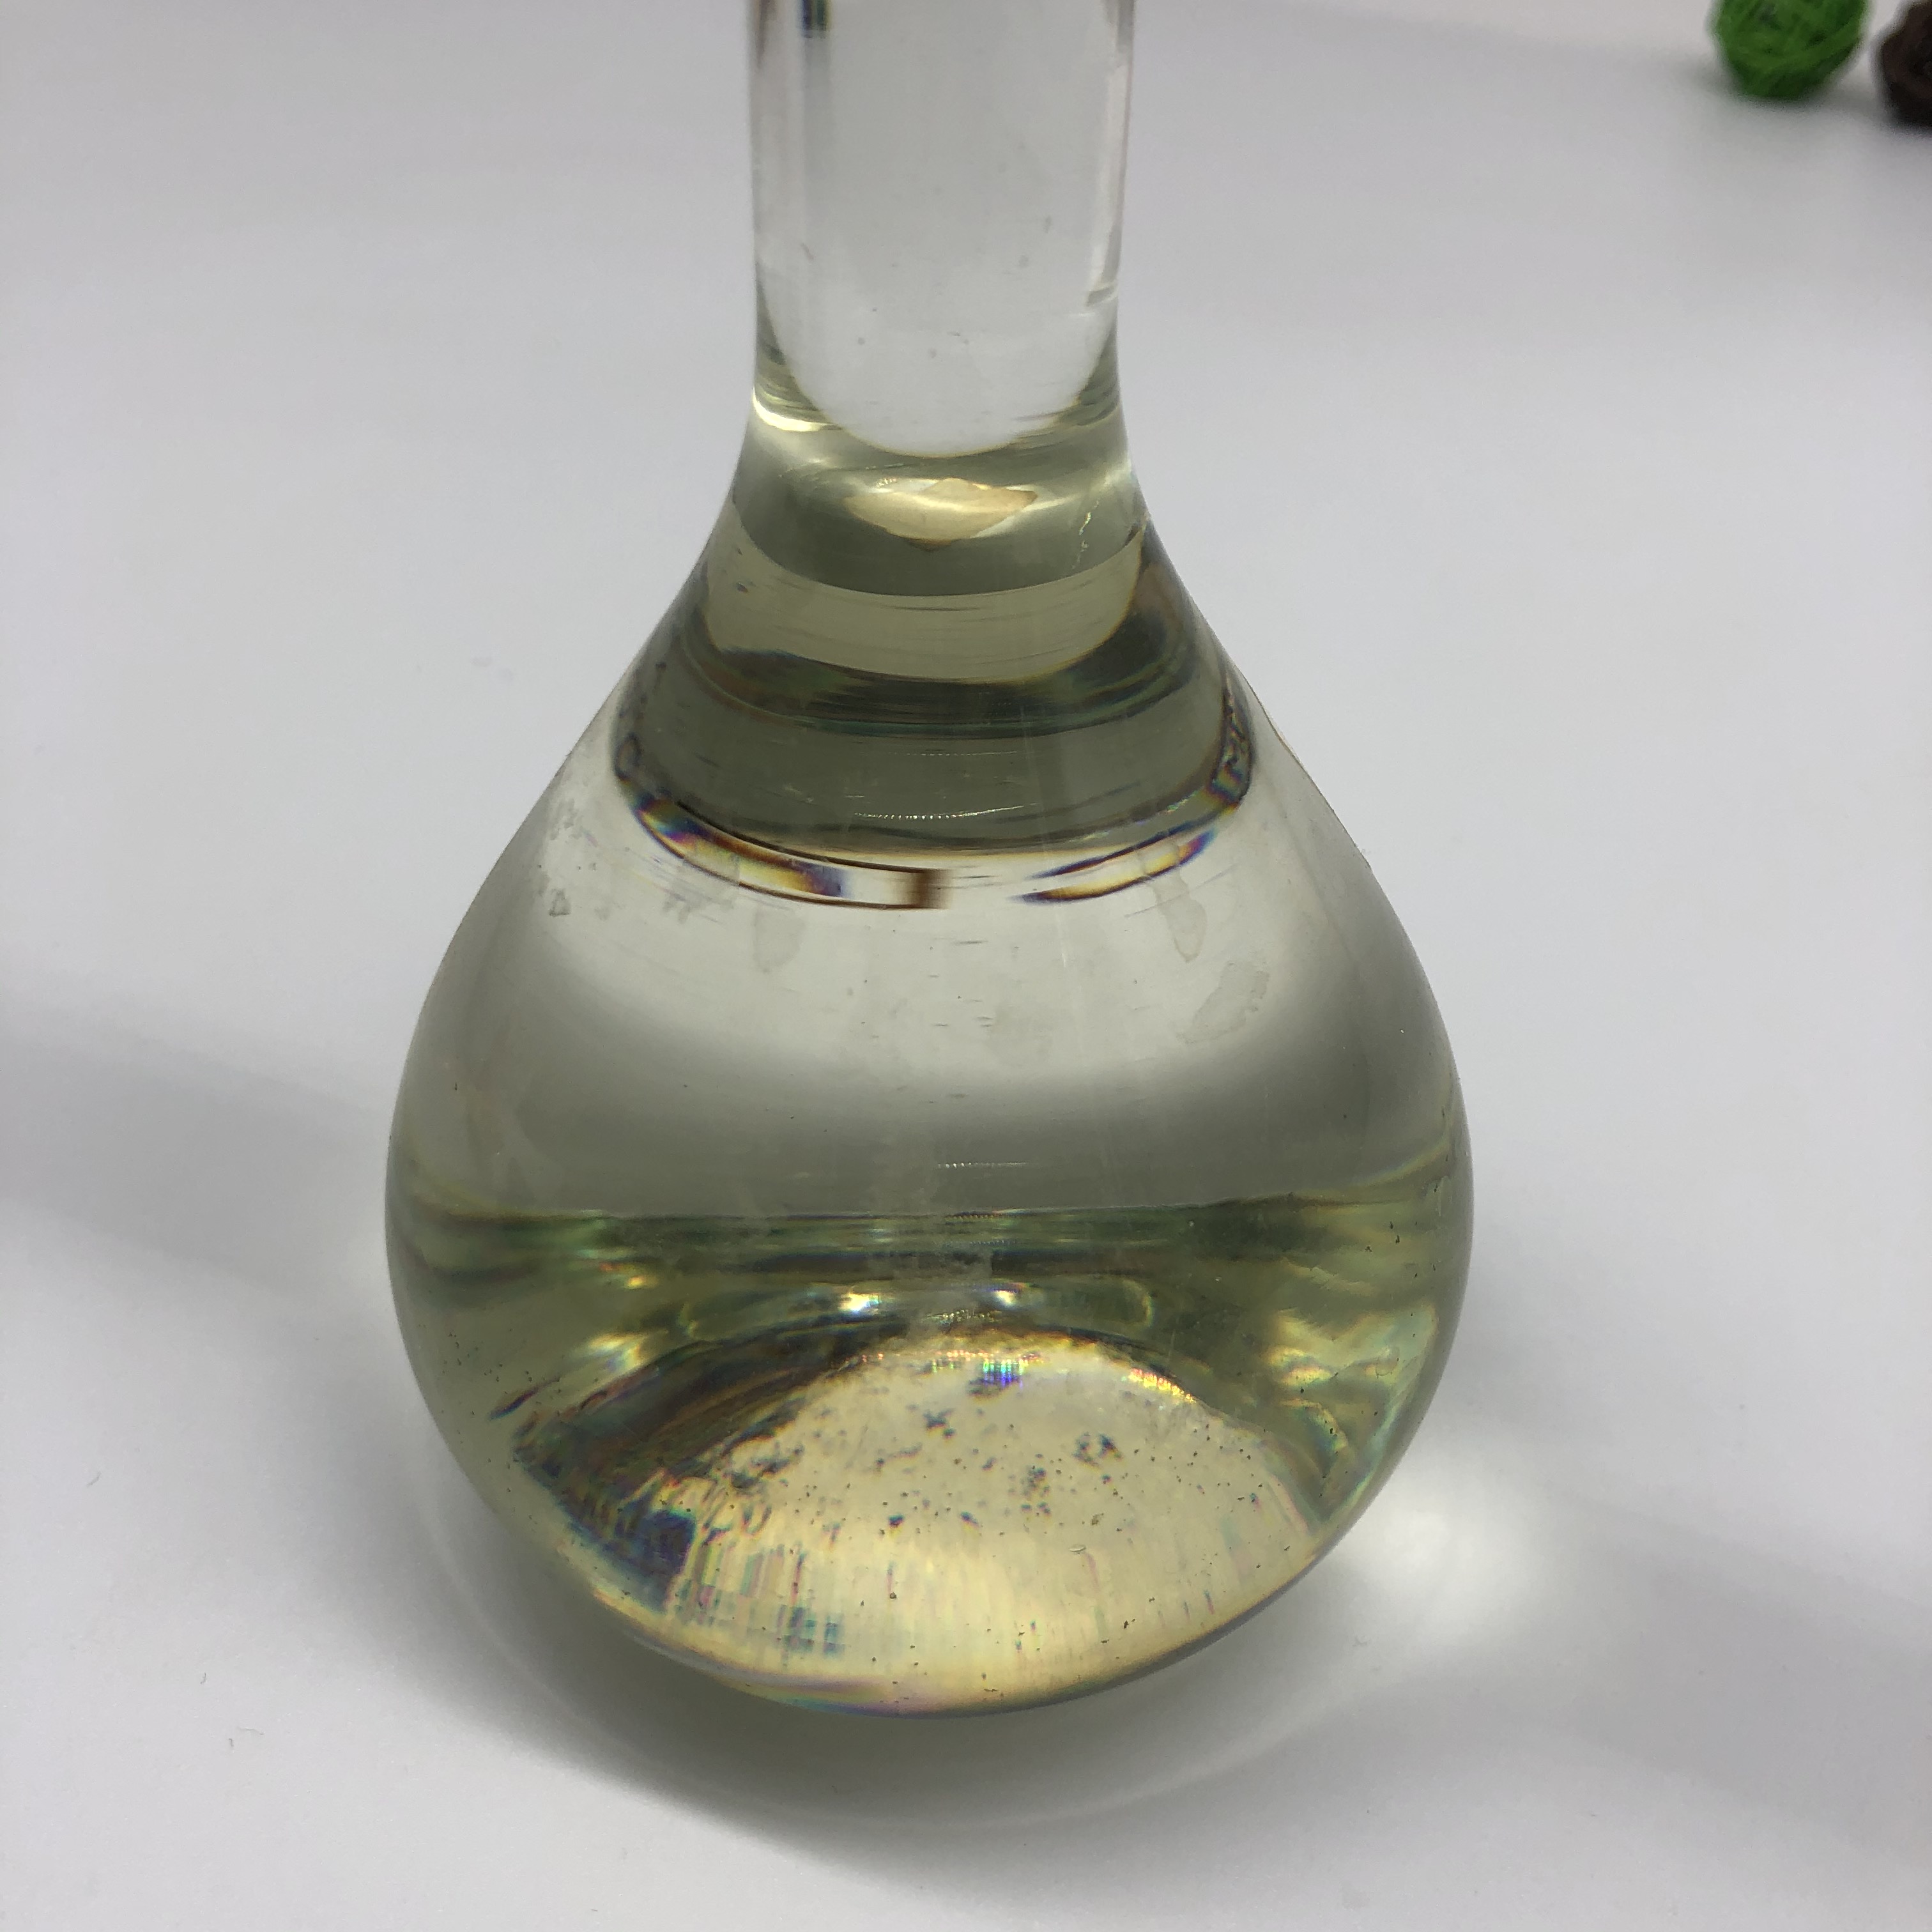 3-(2-ethylhexoxy)propane-1,2-diol 99%